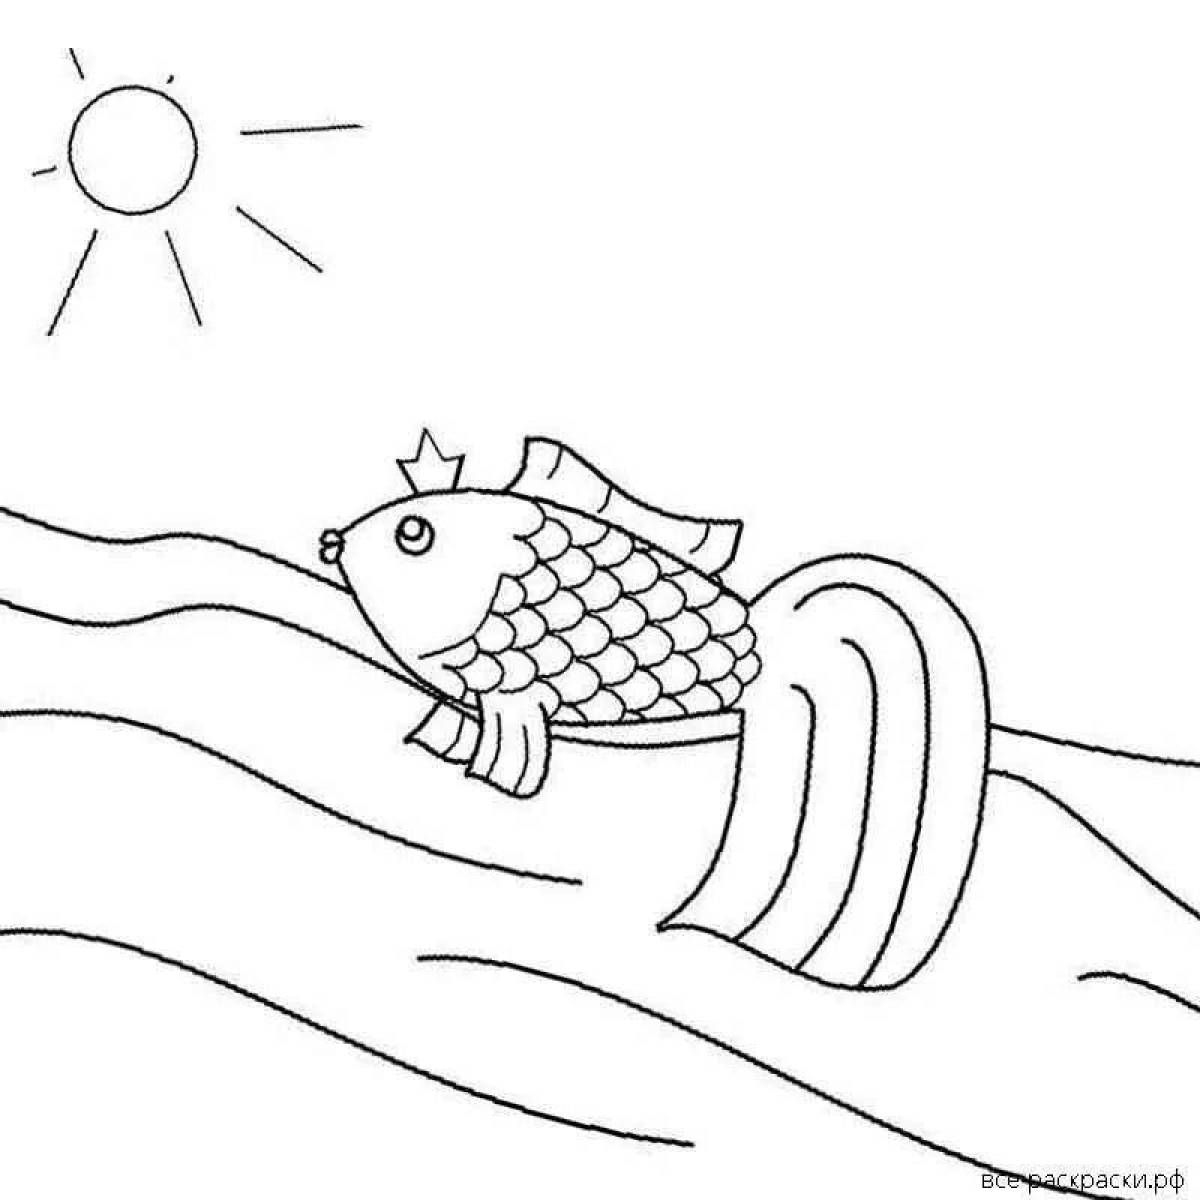 Иллюстрация к сказке Золотая рыбка карандашом